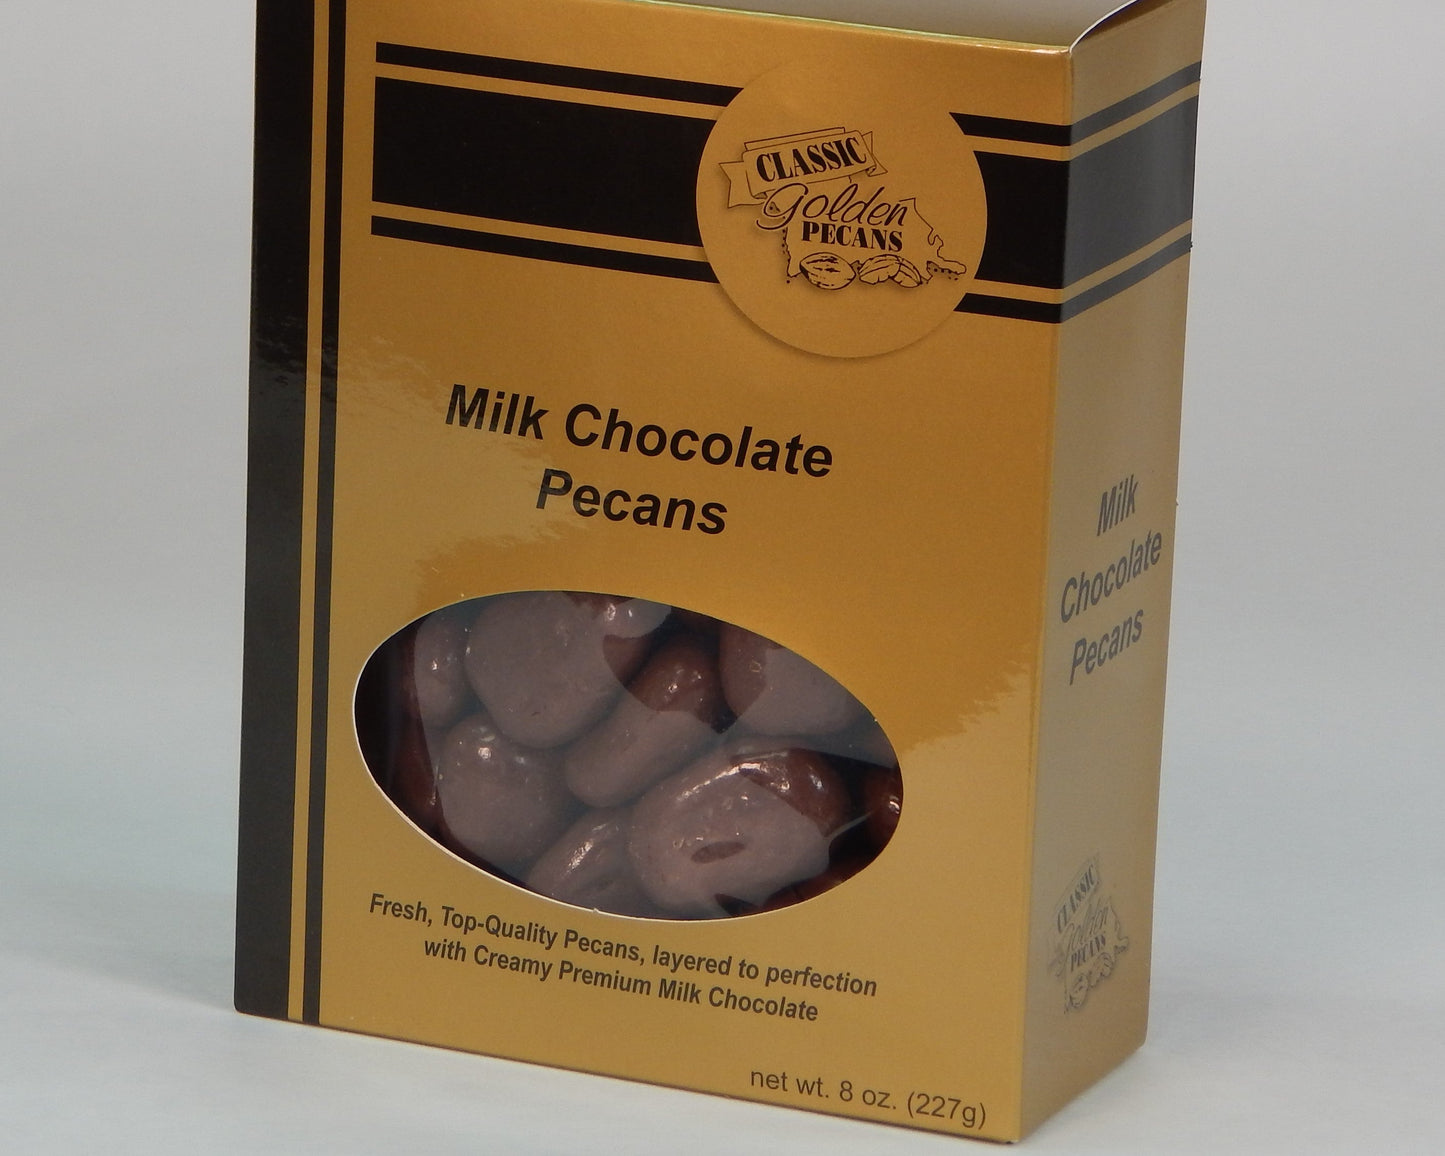 Milk Chocolate Pecans by Classic Golden Pecans